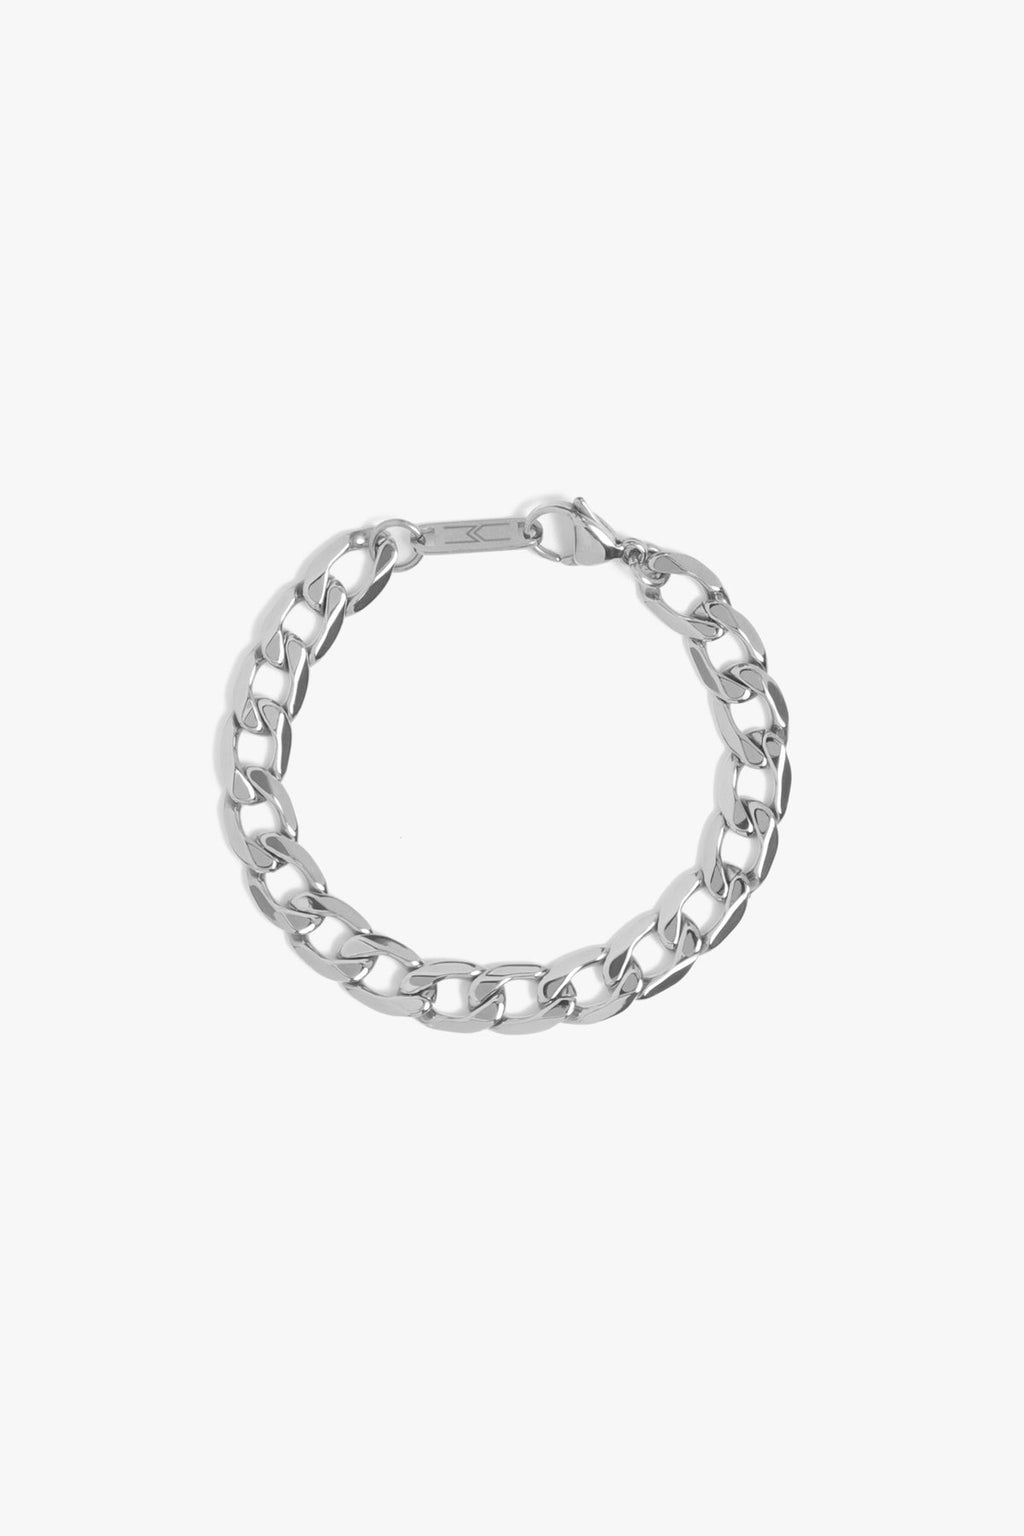 Marrin Costello Jewelry - Kings Bracelet - Silver